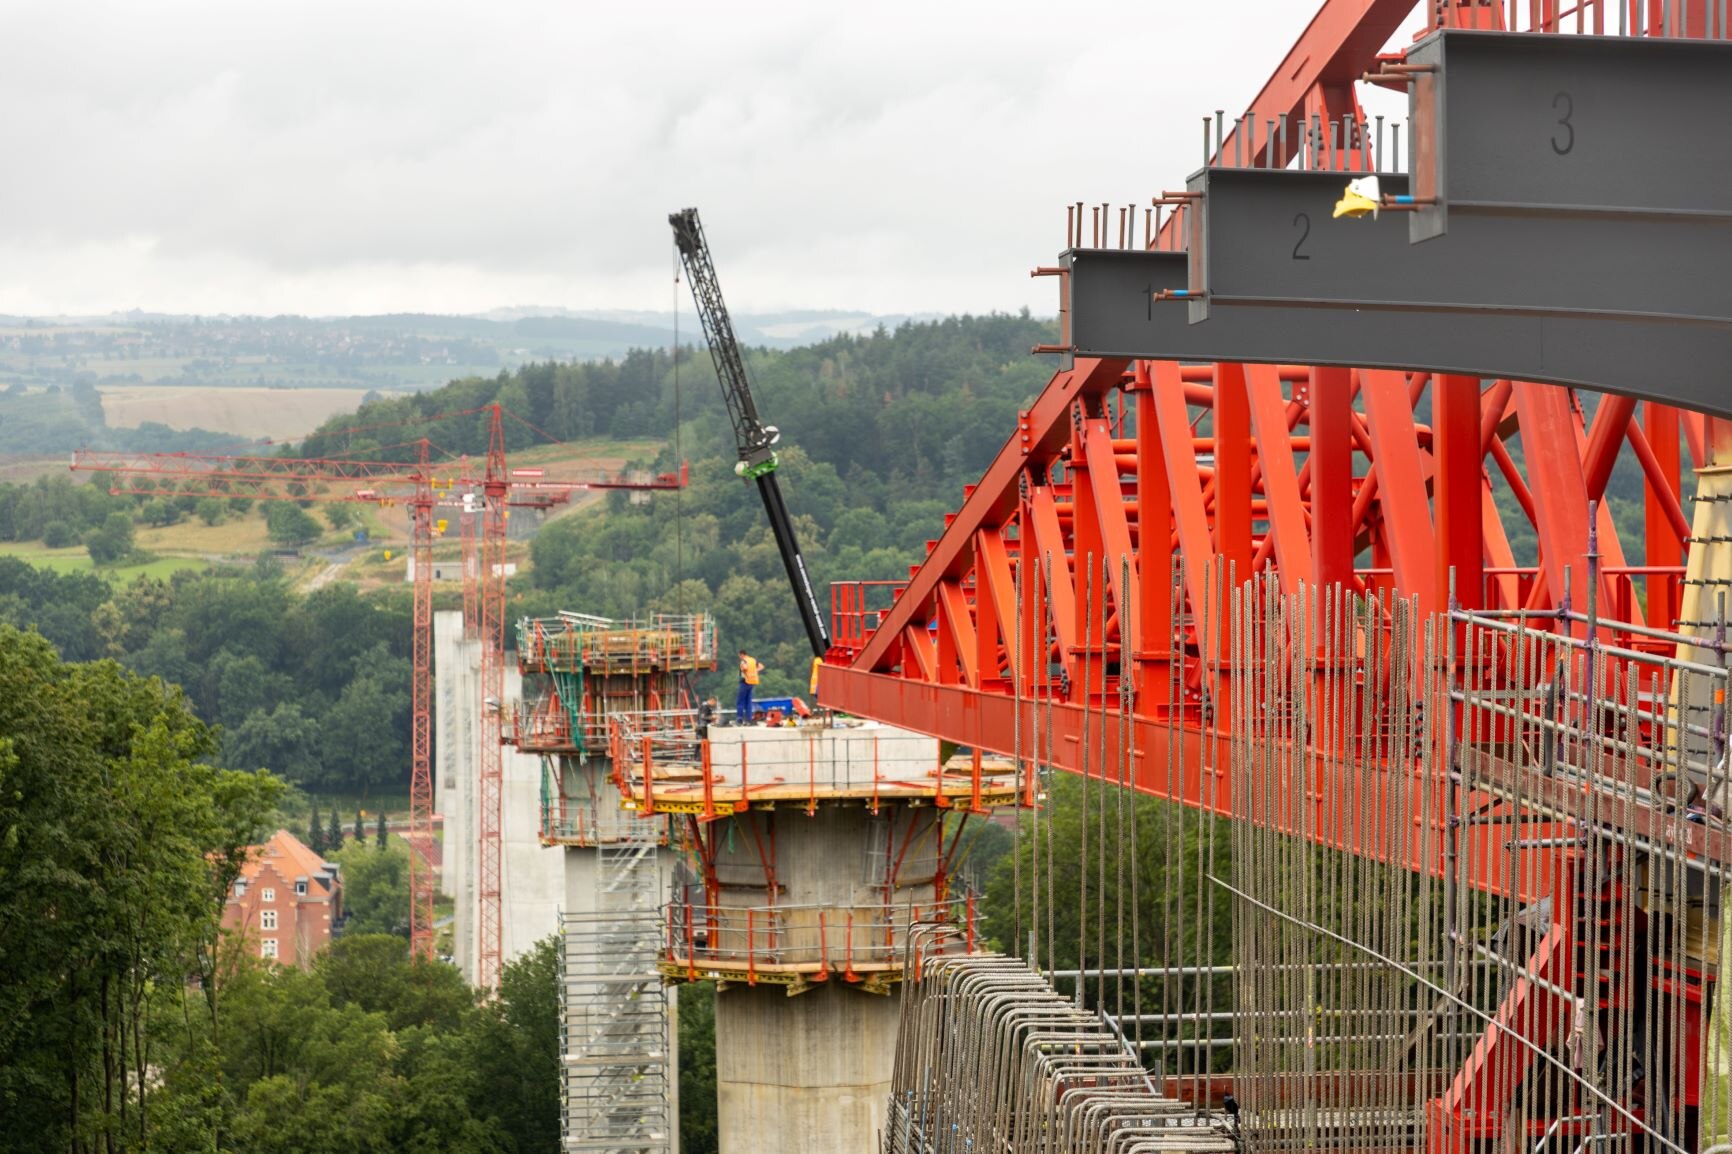 Brückenarbeiten auf der Baustelle der B172n in Pirna.